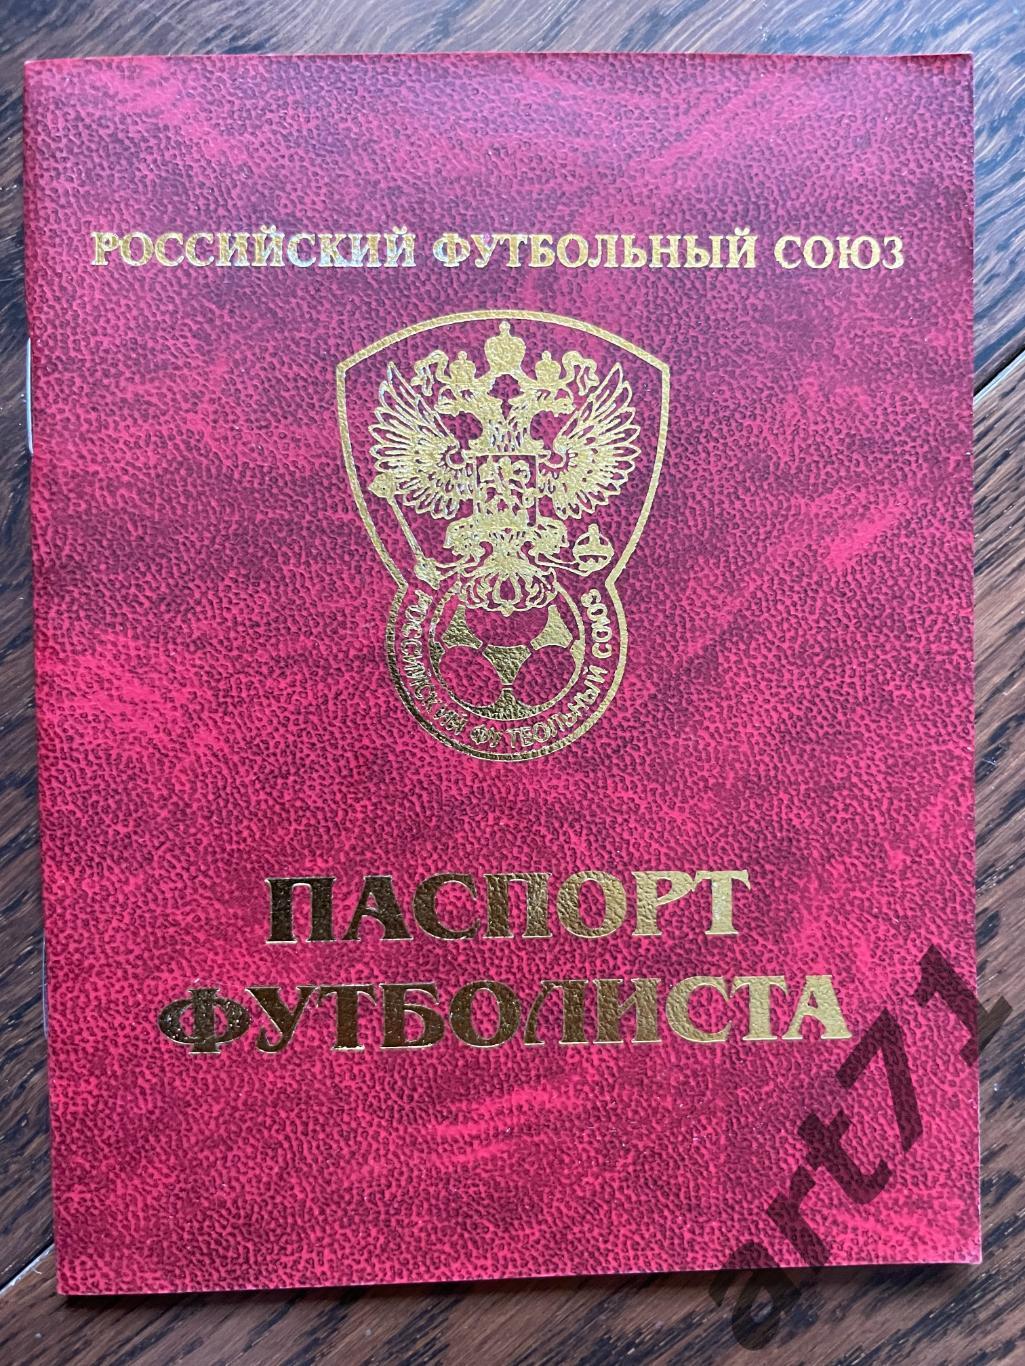 Паспорт футболиста РФС